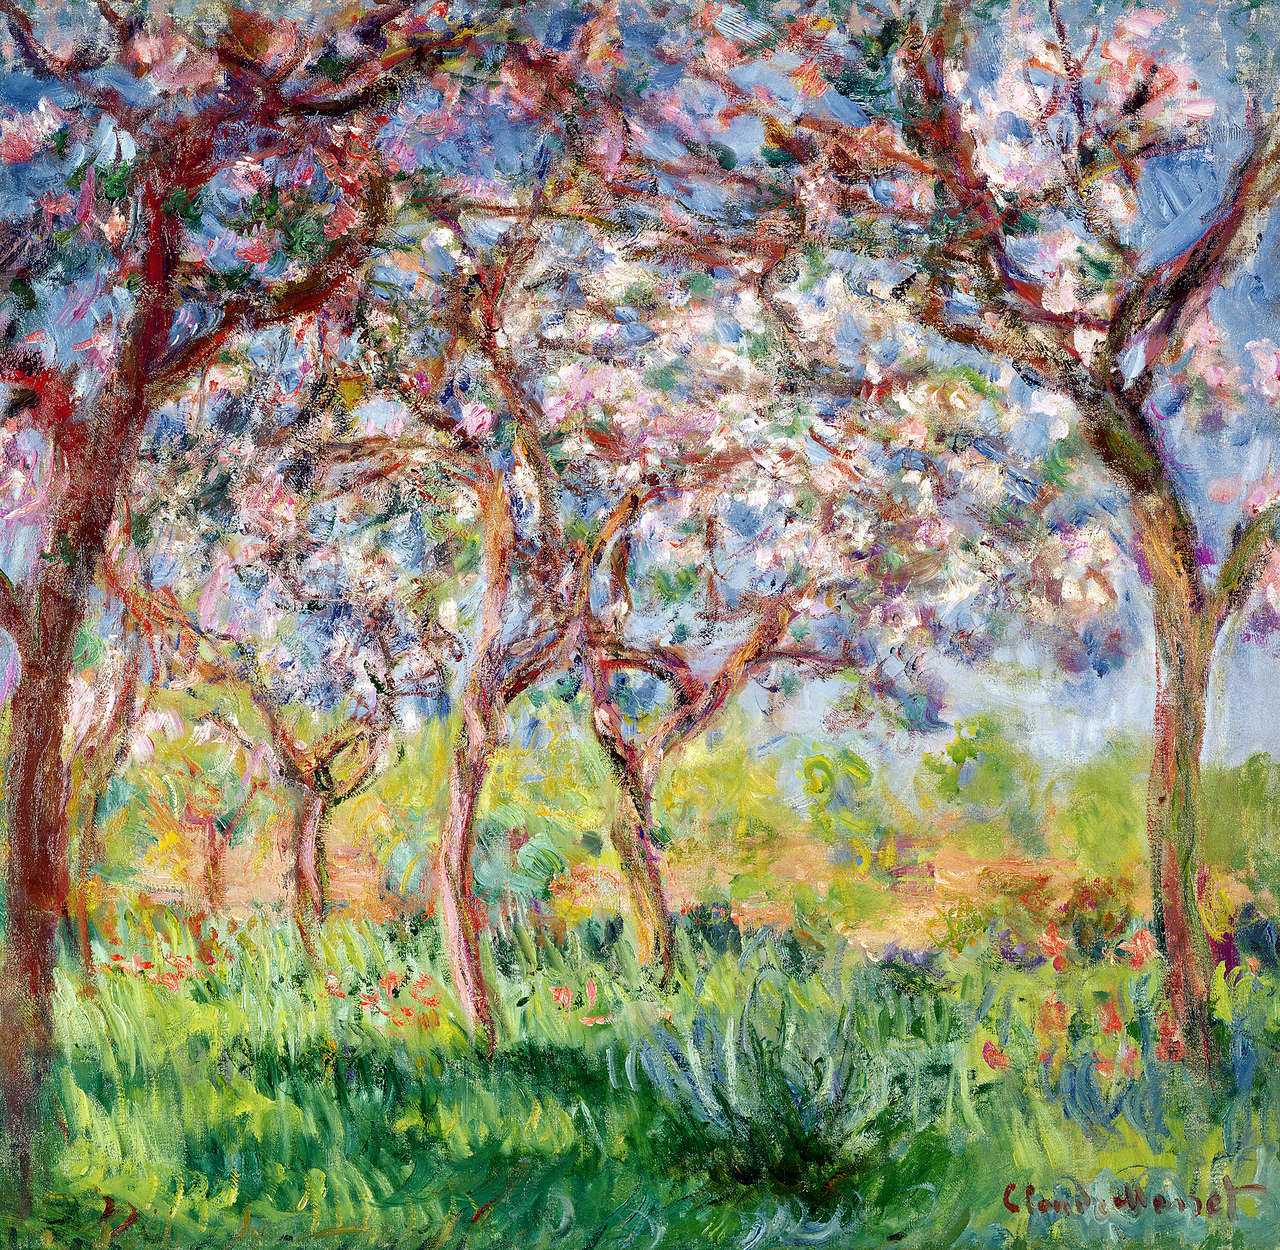             Mural "Primavera en Giverny" de Claude Monet
        